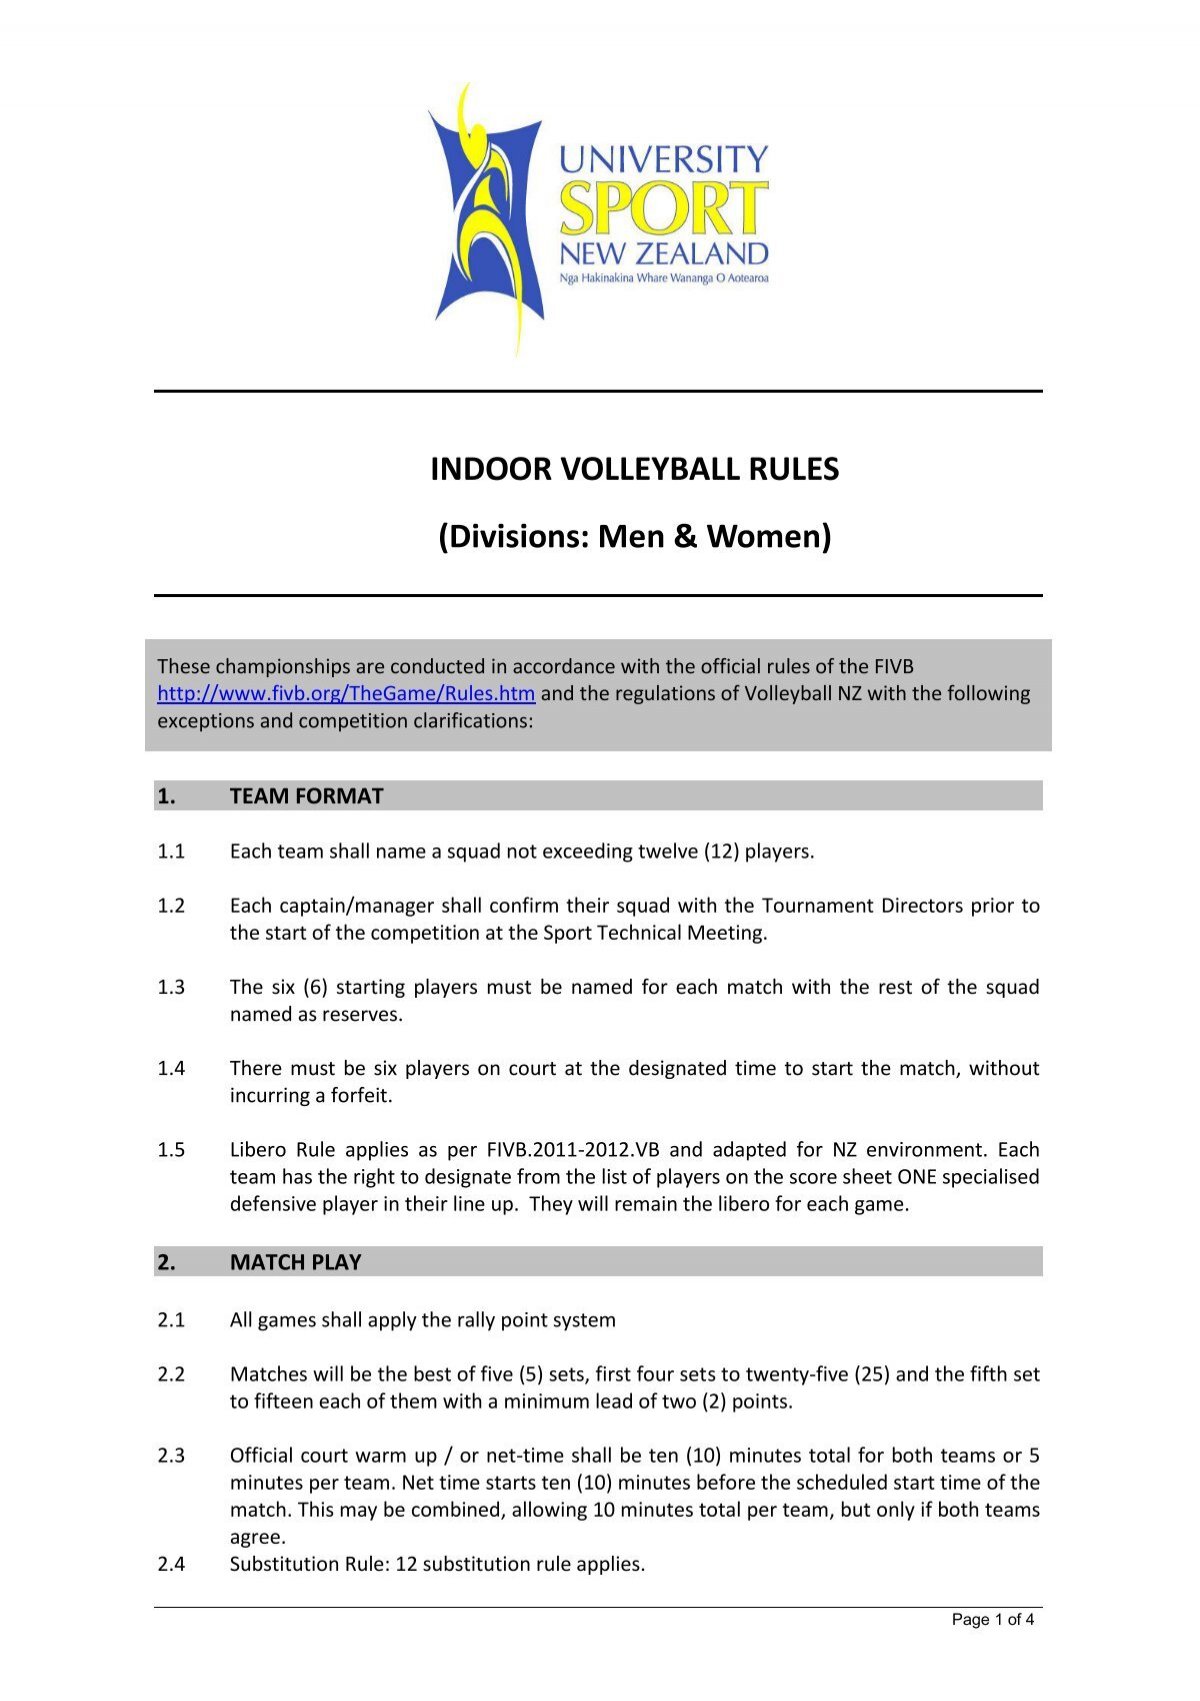 men's indoor volleyball rules